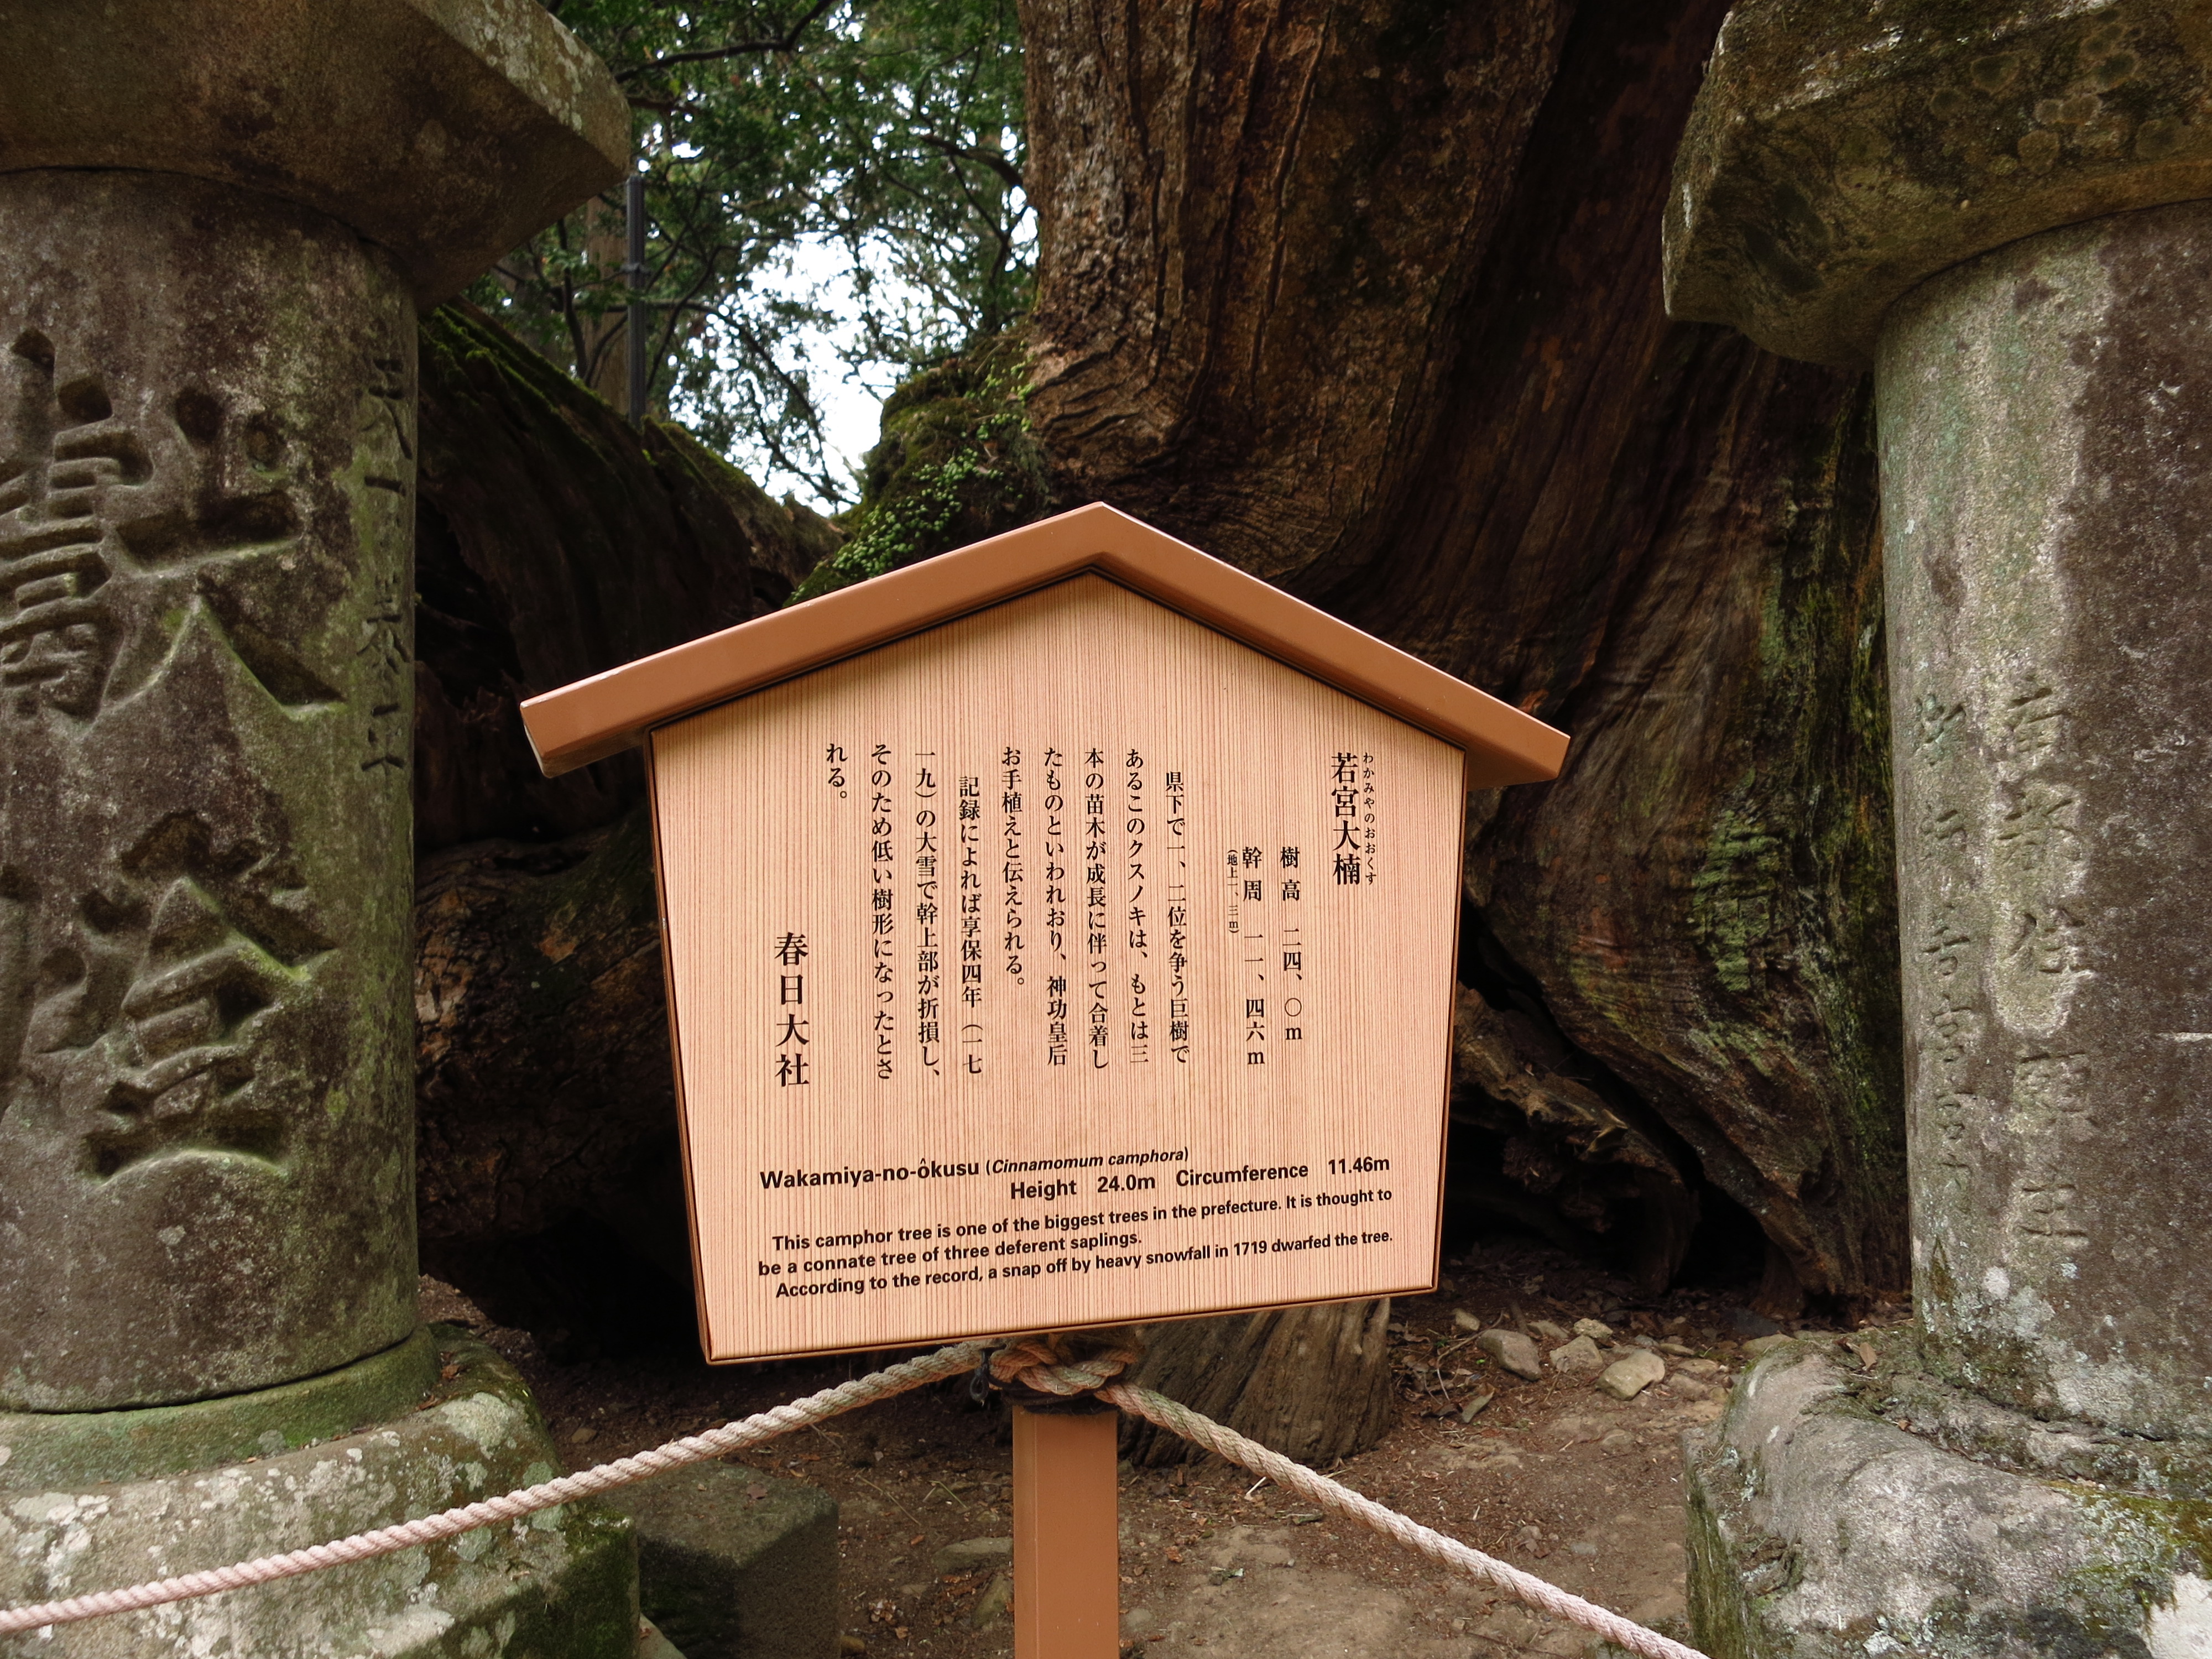 「若宮大楠」とあり、県下1,2位を争う巨樹であることがわかりました。